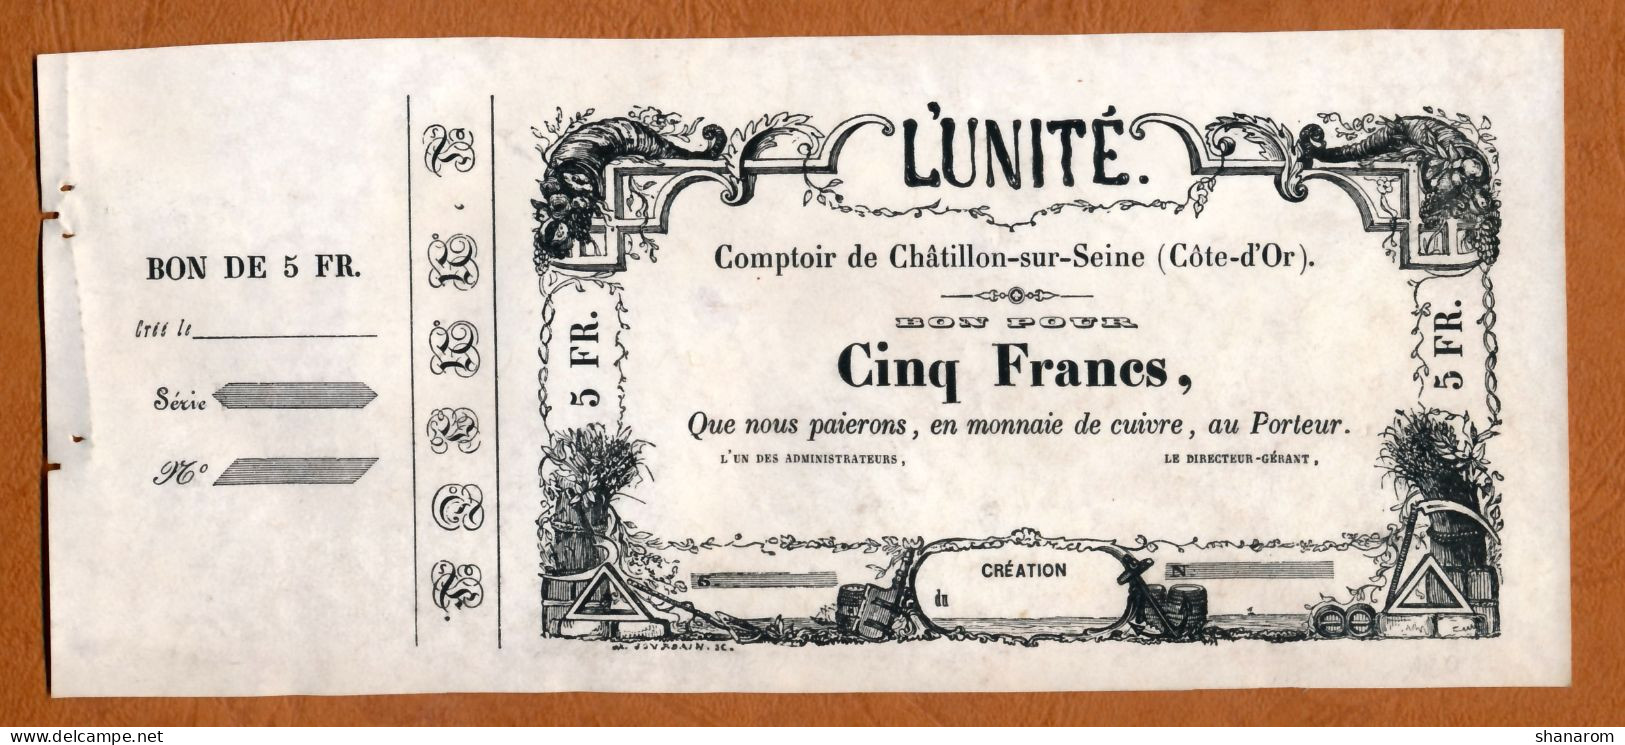 BON COMMERCIAL // CHATILLON-SUR-SEINE (Côte-d'Or) // L'UNITE // Cinq Francs - Bons & Nécessité